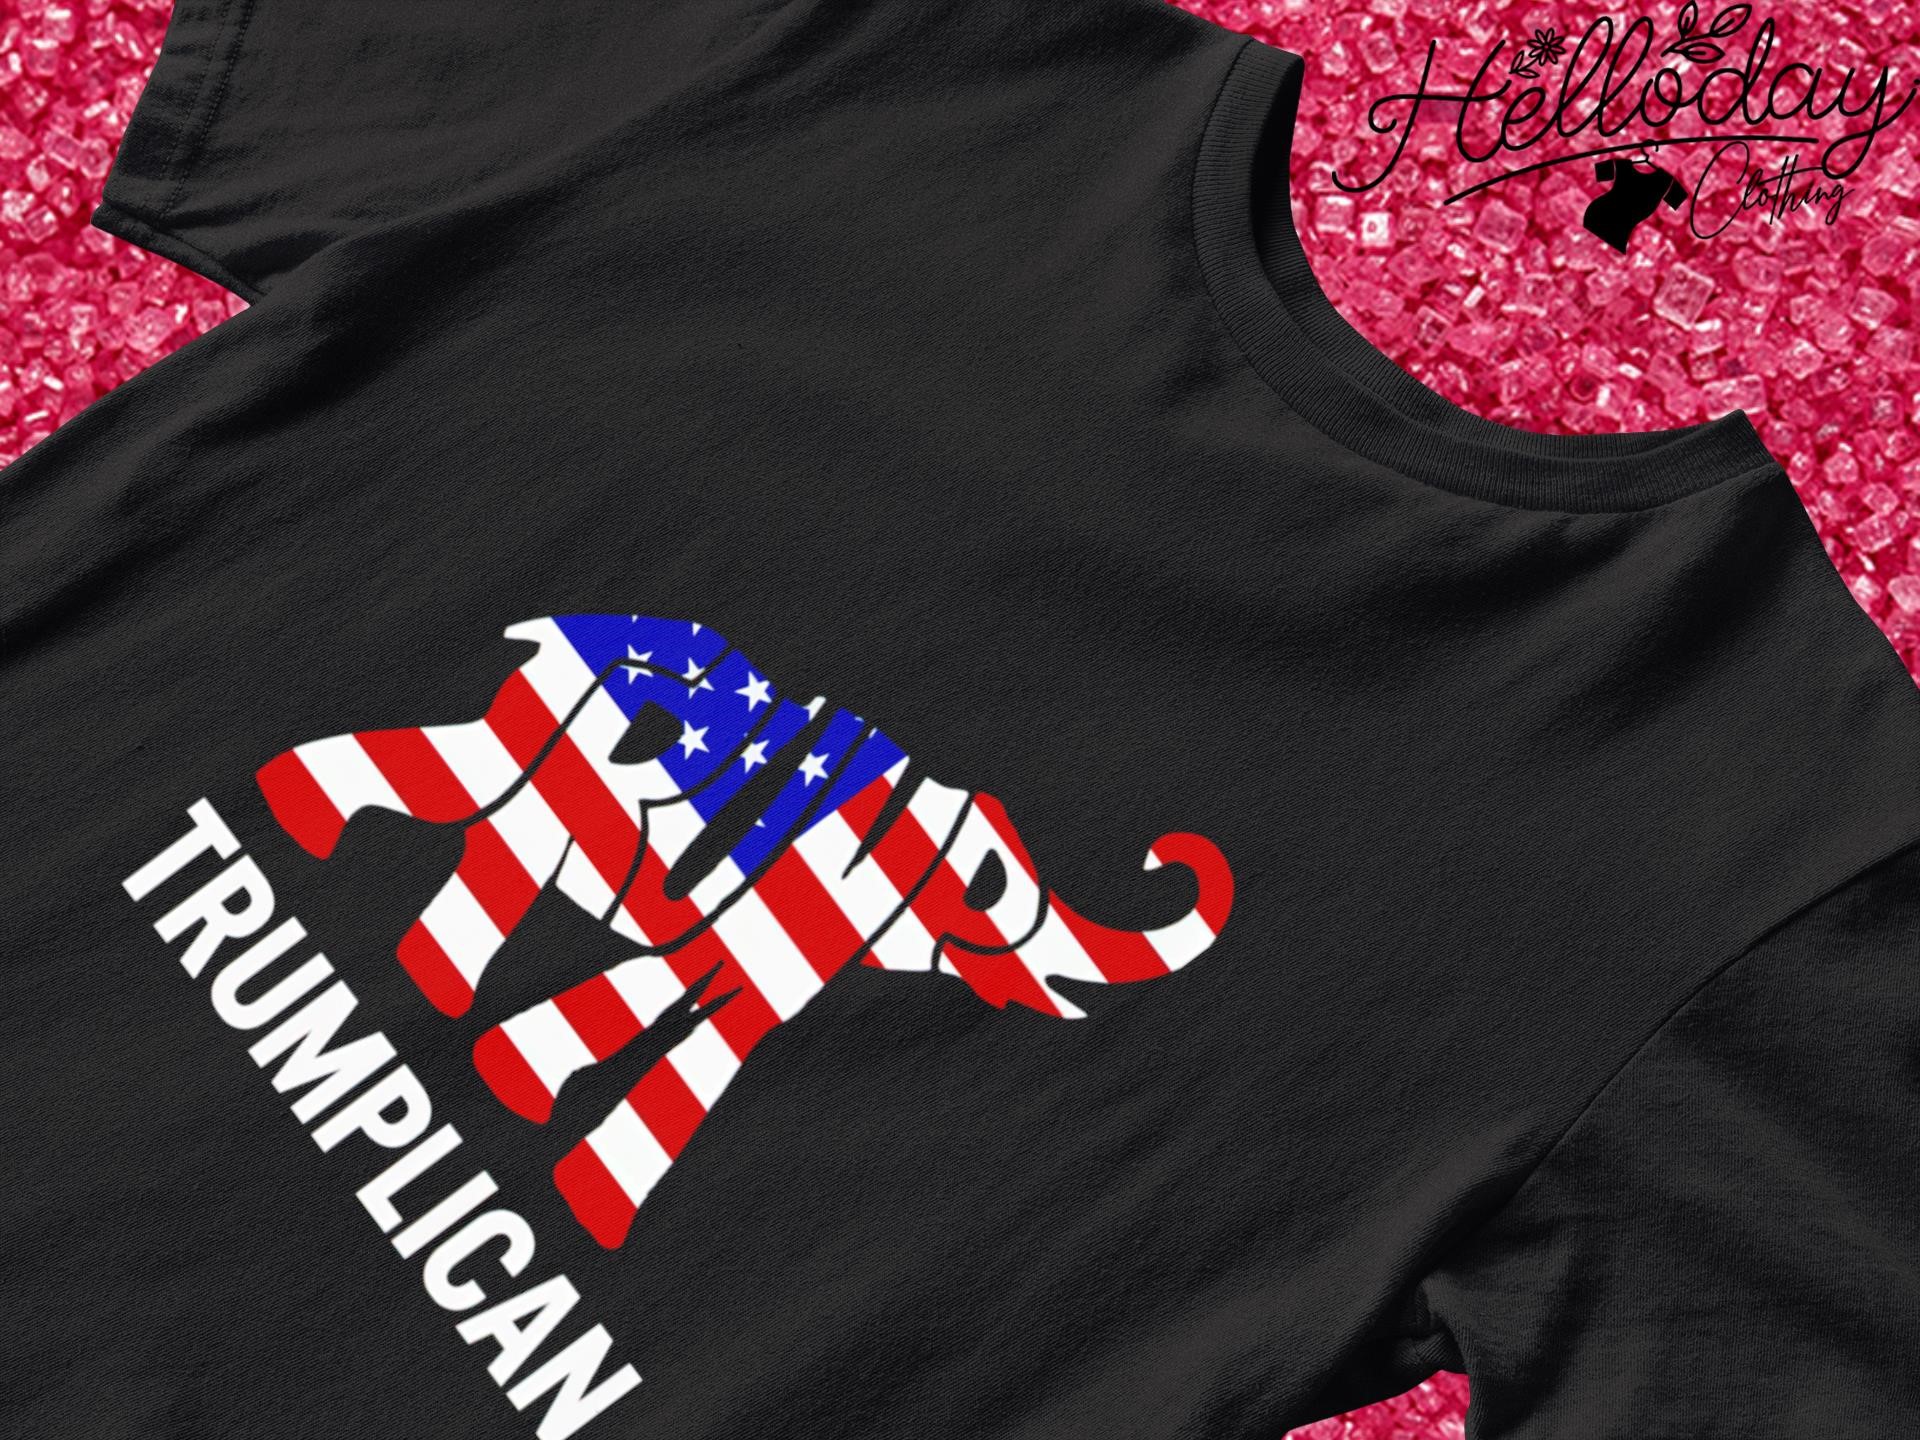 Elephant Trump Trumplican shirt